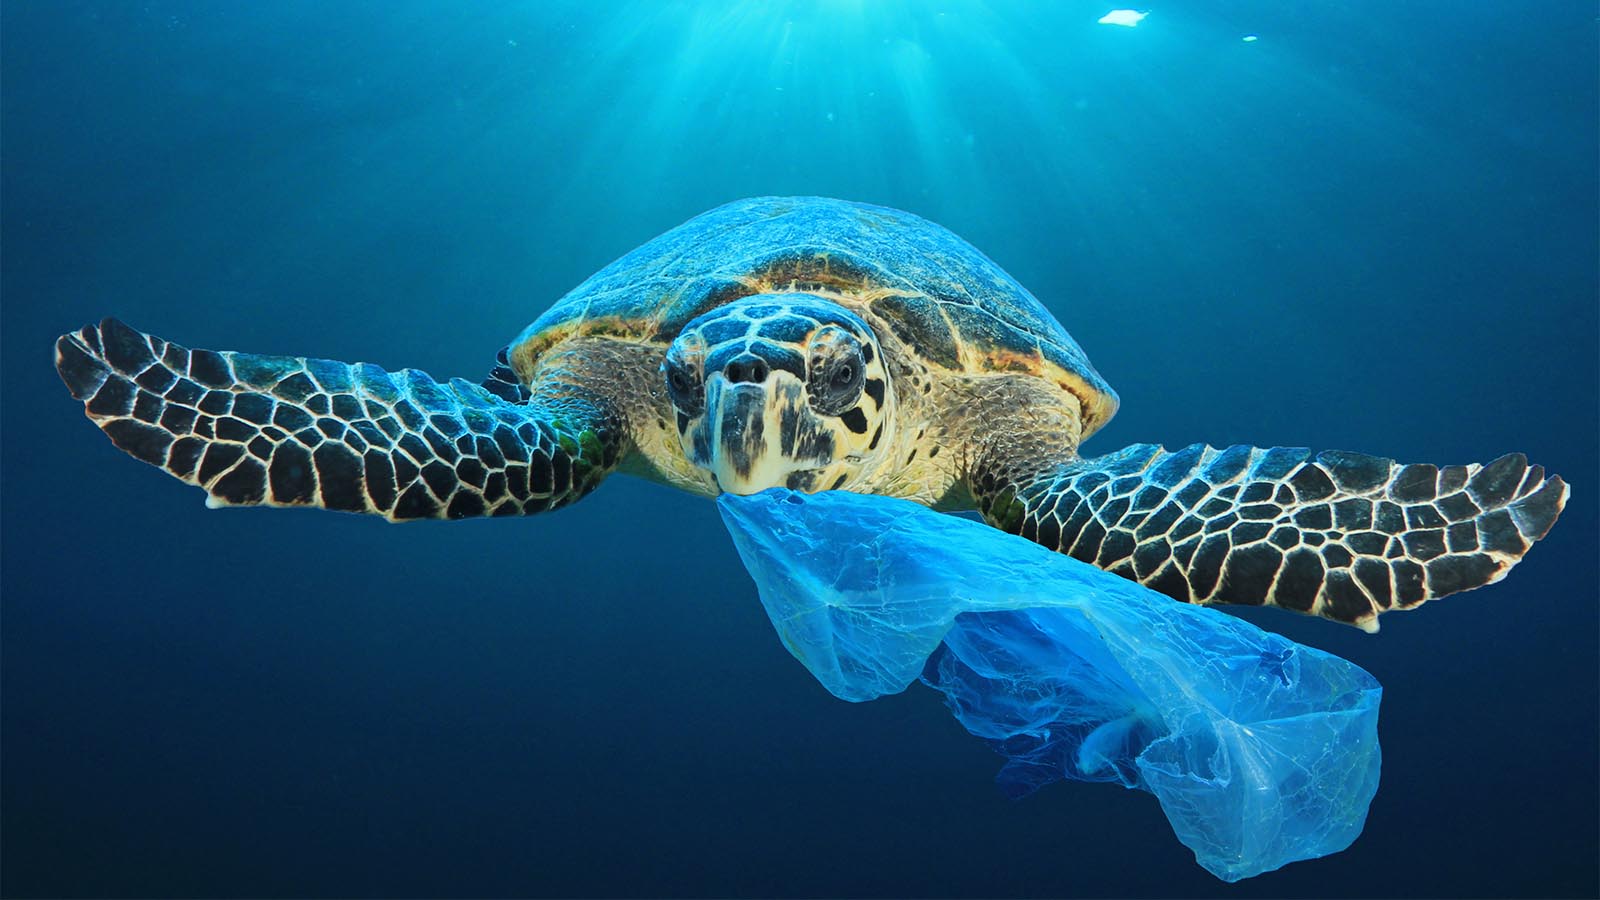 צב ים אוכל שקית פלסטיק. "צבים אוכלים מדוזות ושקית ניילון ששוחה בזרם דומה למדוזה" (צילום: Shutterstock)